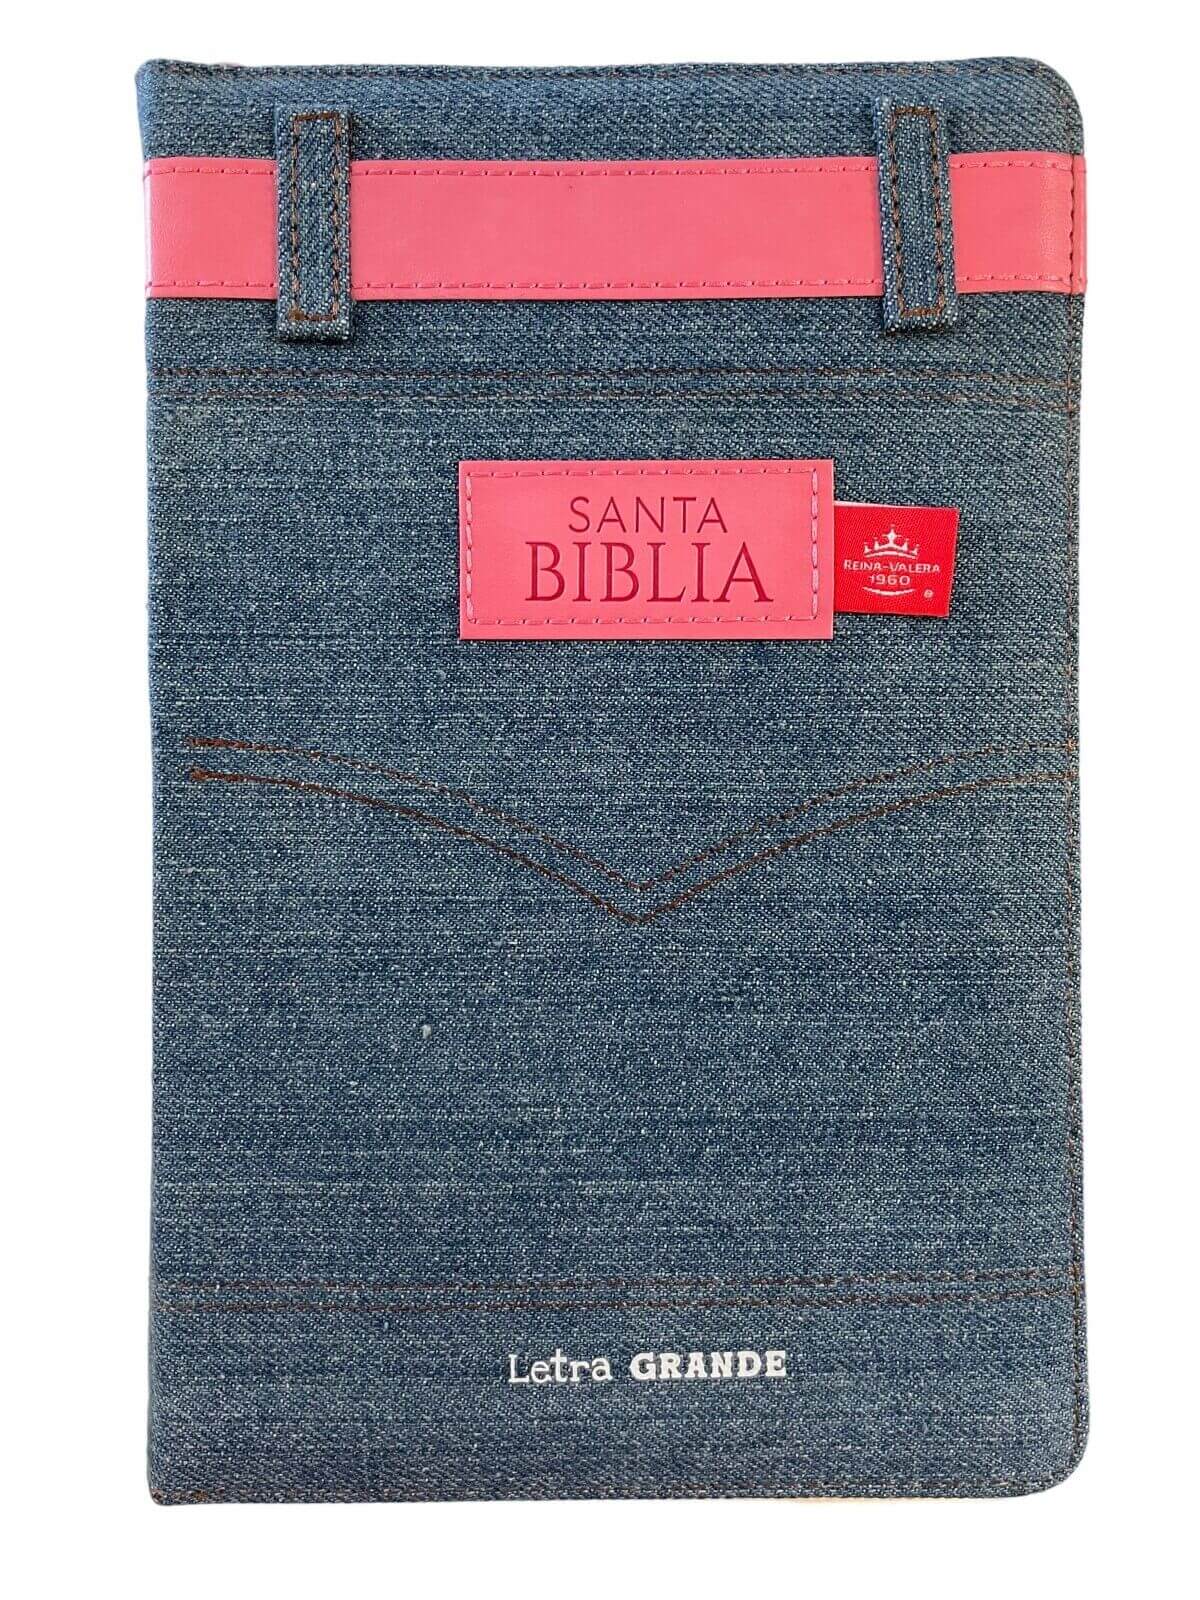 Biblia RVR60 065czti Jean cinturón rosa. Con cierre/índice